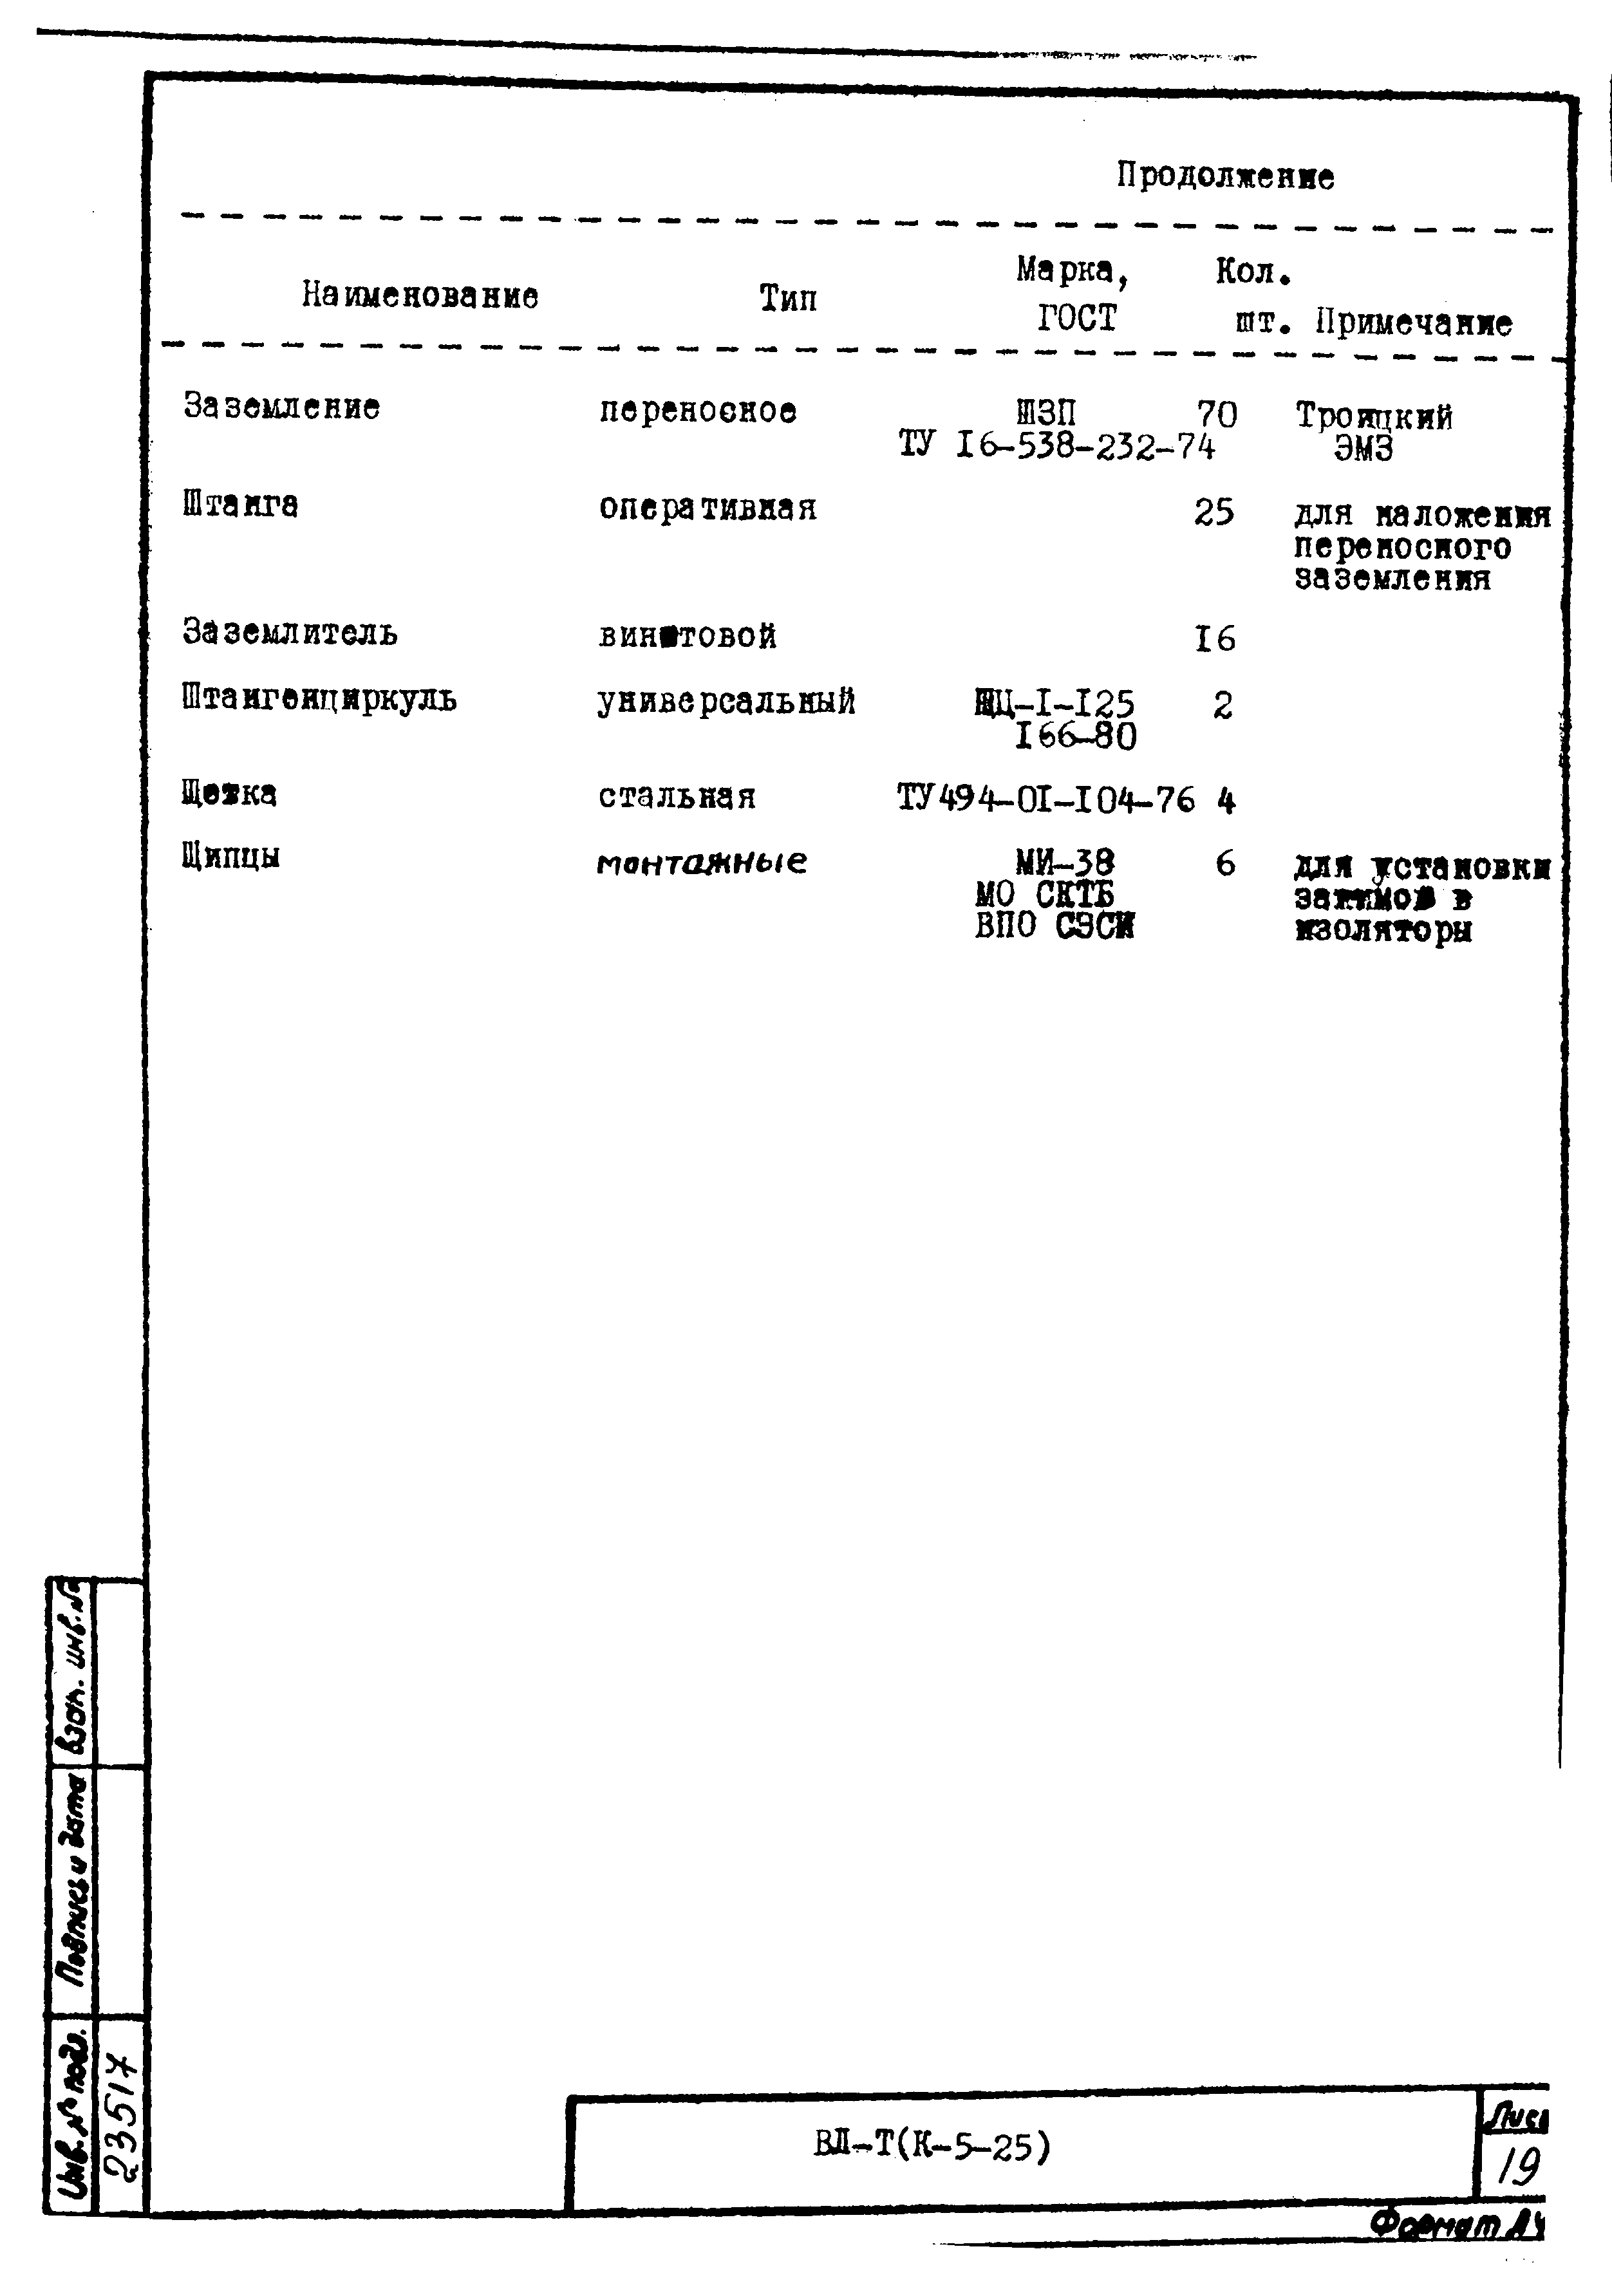 Технологическая карта К-5-25-9